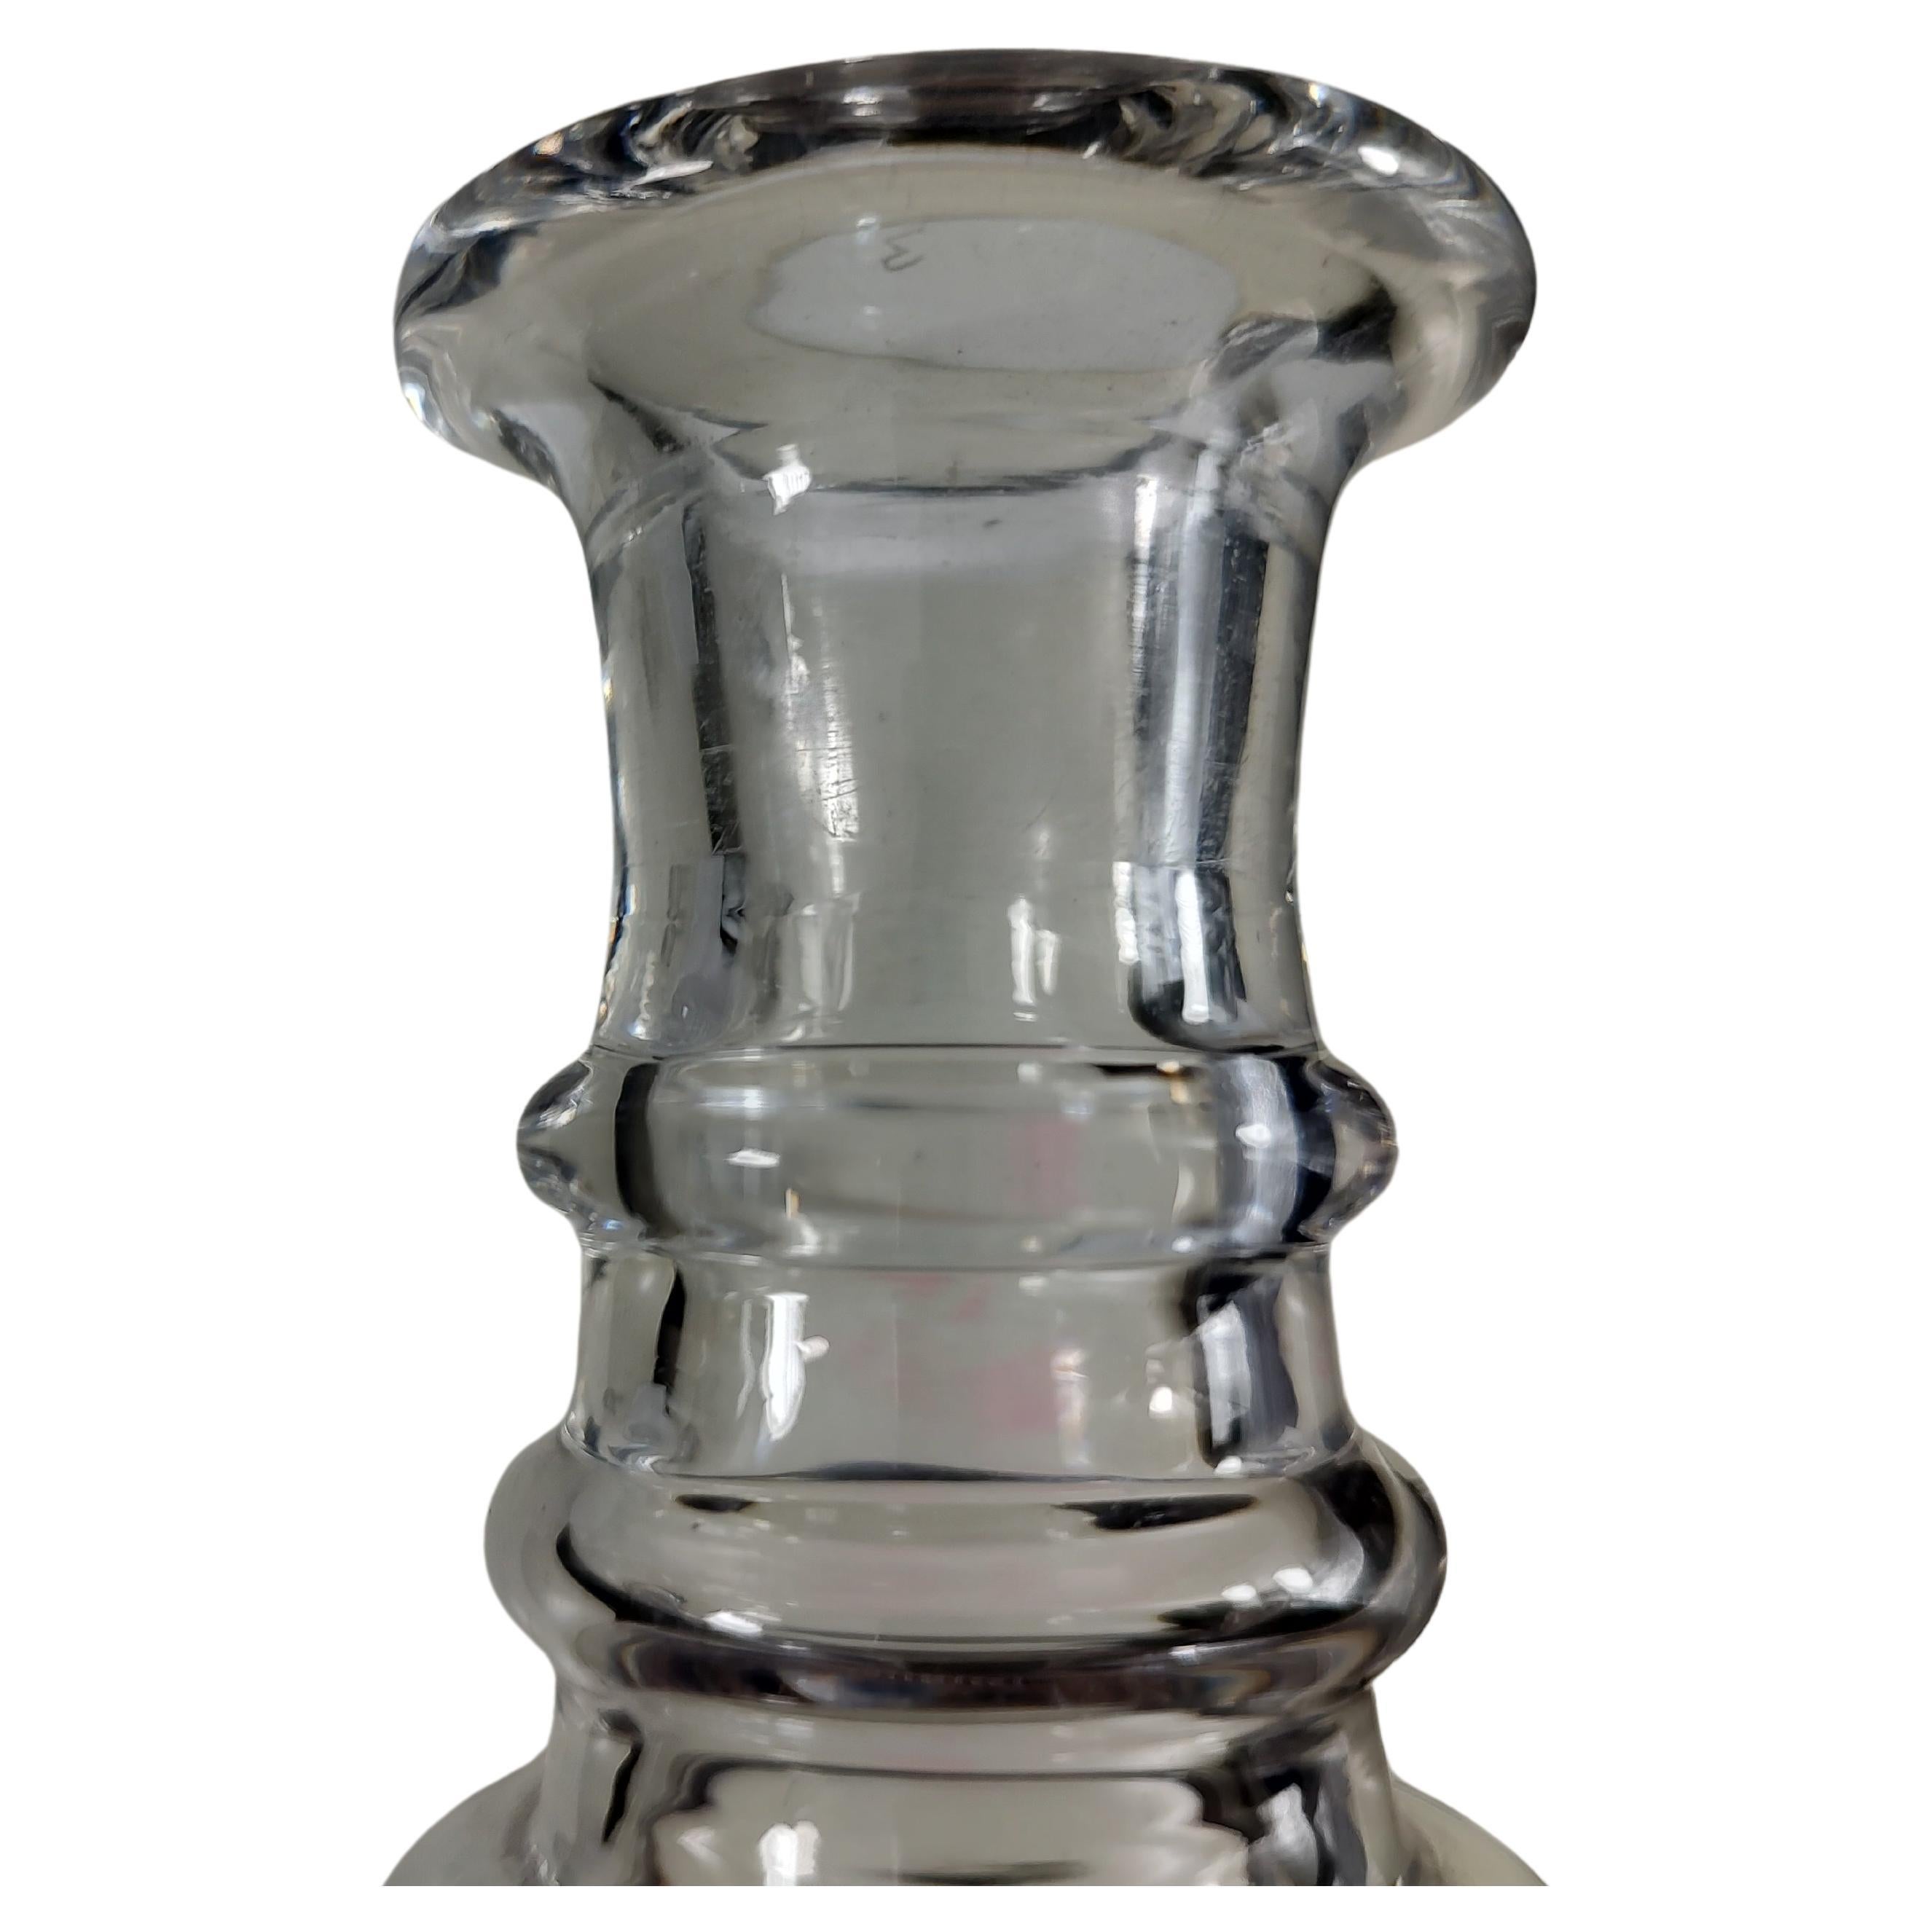 Exquisiter Satz von 3 Flaschen aus geschliffenem Kristallglas von Stuart Glass Co. aus England um 1940. In ausgezeichnetem Vintage-Zustand mit minimalen Gebrauchsspuren. Die Flaschen sind auf dem Boden signiert und zwei haben Aufkleber des